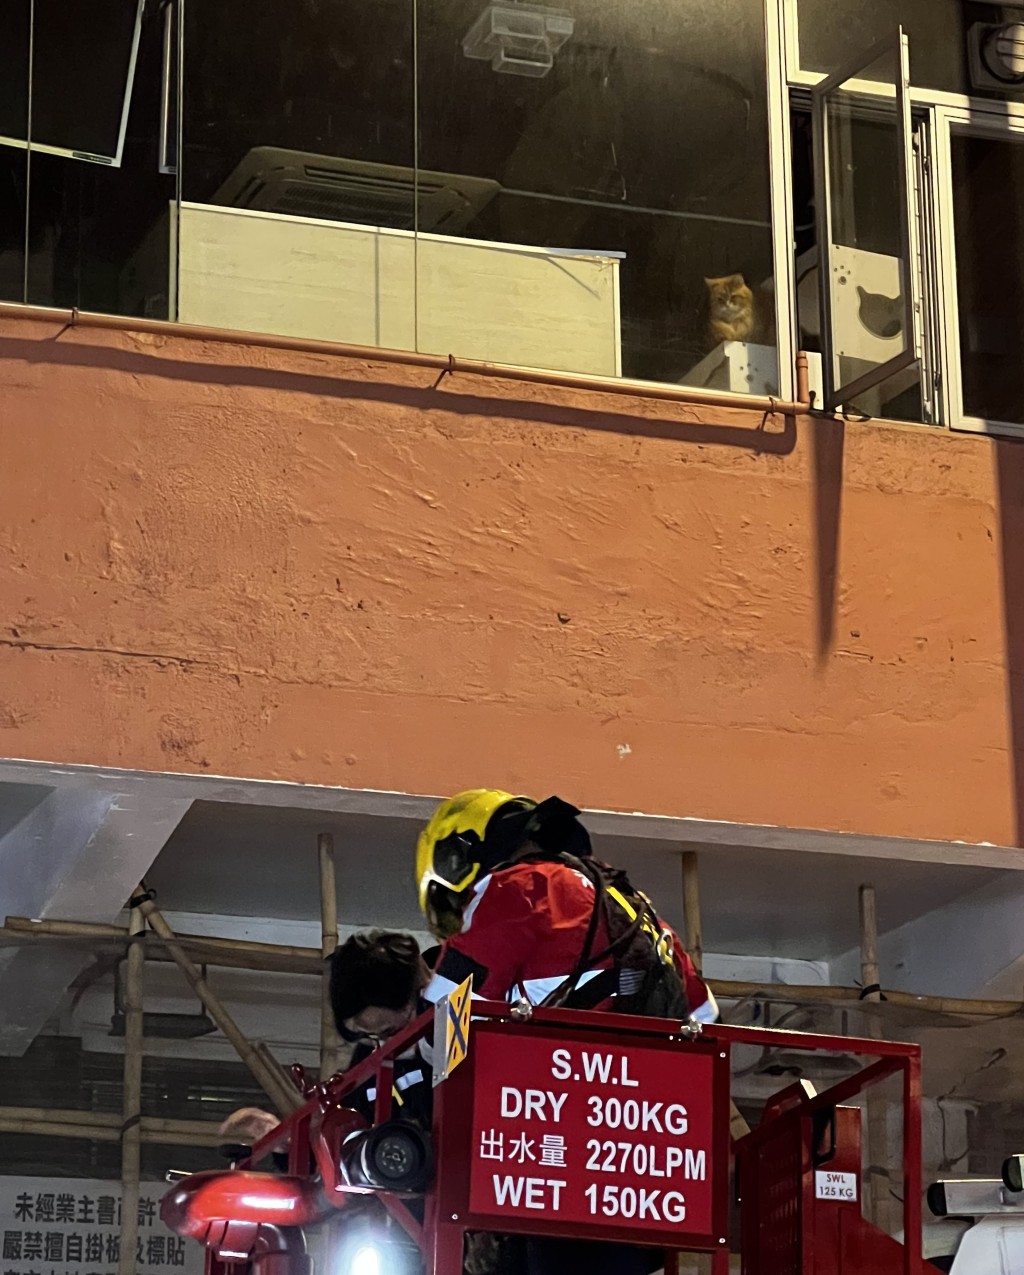 消防一度架起云梯视察店内情况。读者提供